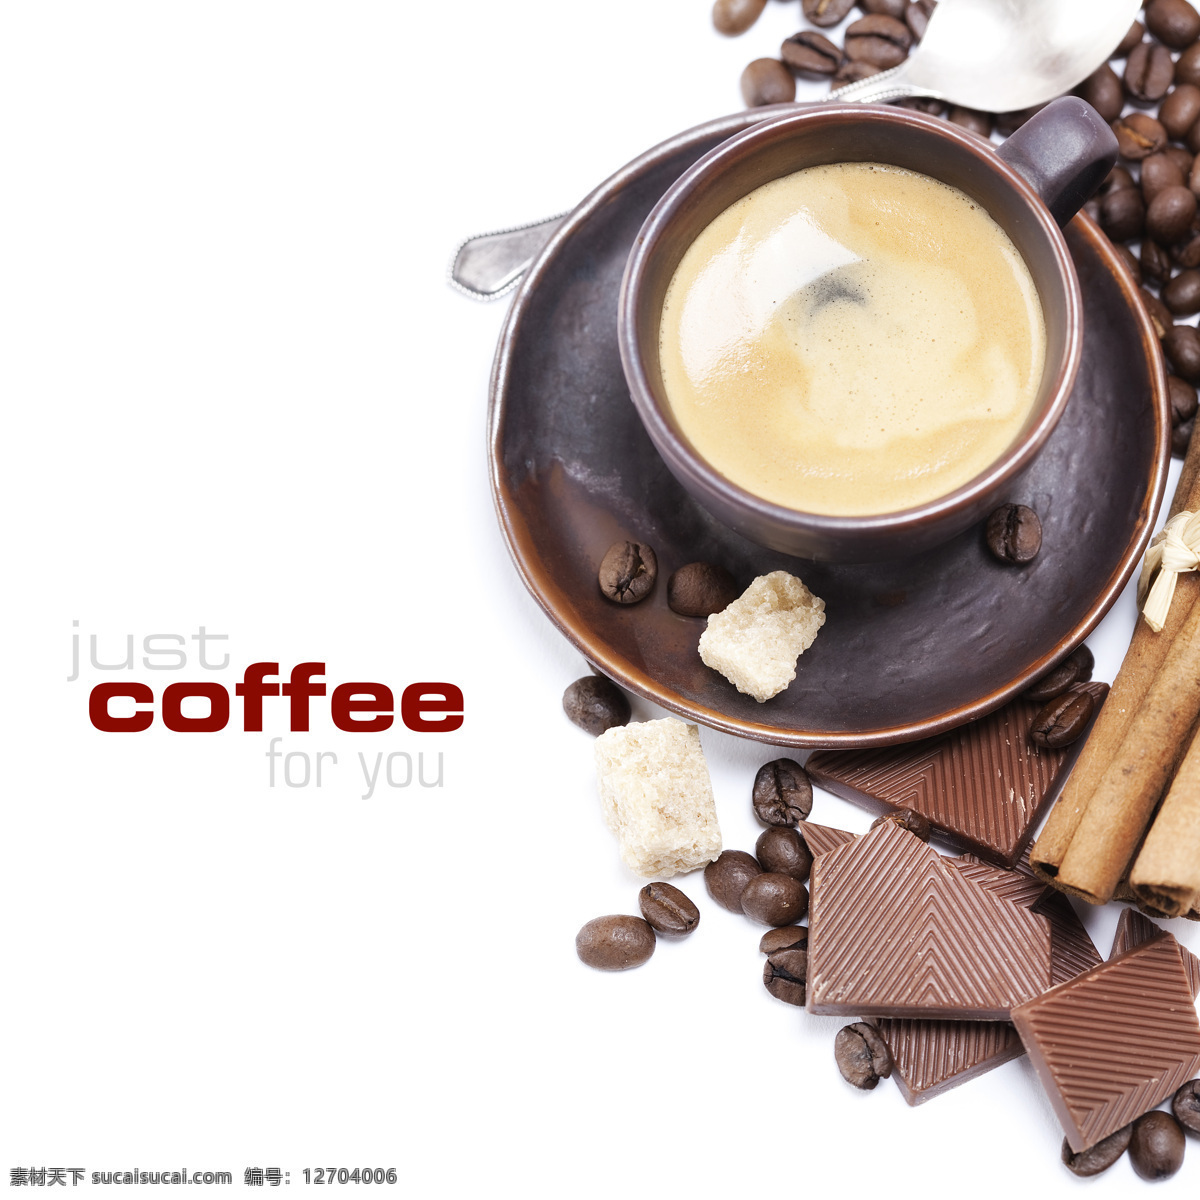 咖啡 图 餐饮美食 咖啡杯 咖啡豆 咖啡摄影 咖啡图 巧克力 饮料酒水 咖啡糖 psd源文件 餐饮素材